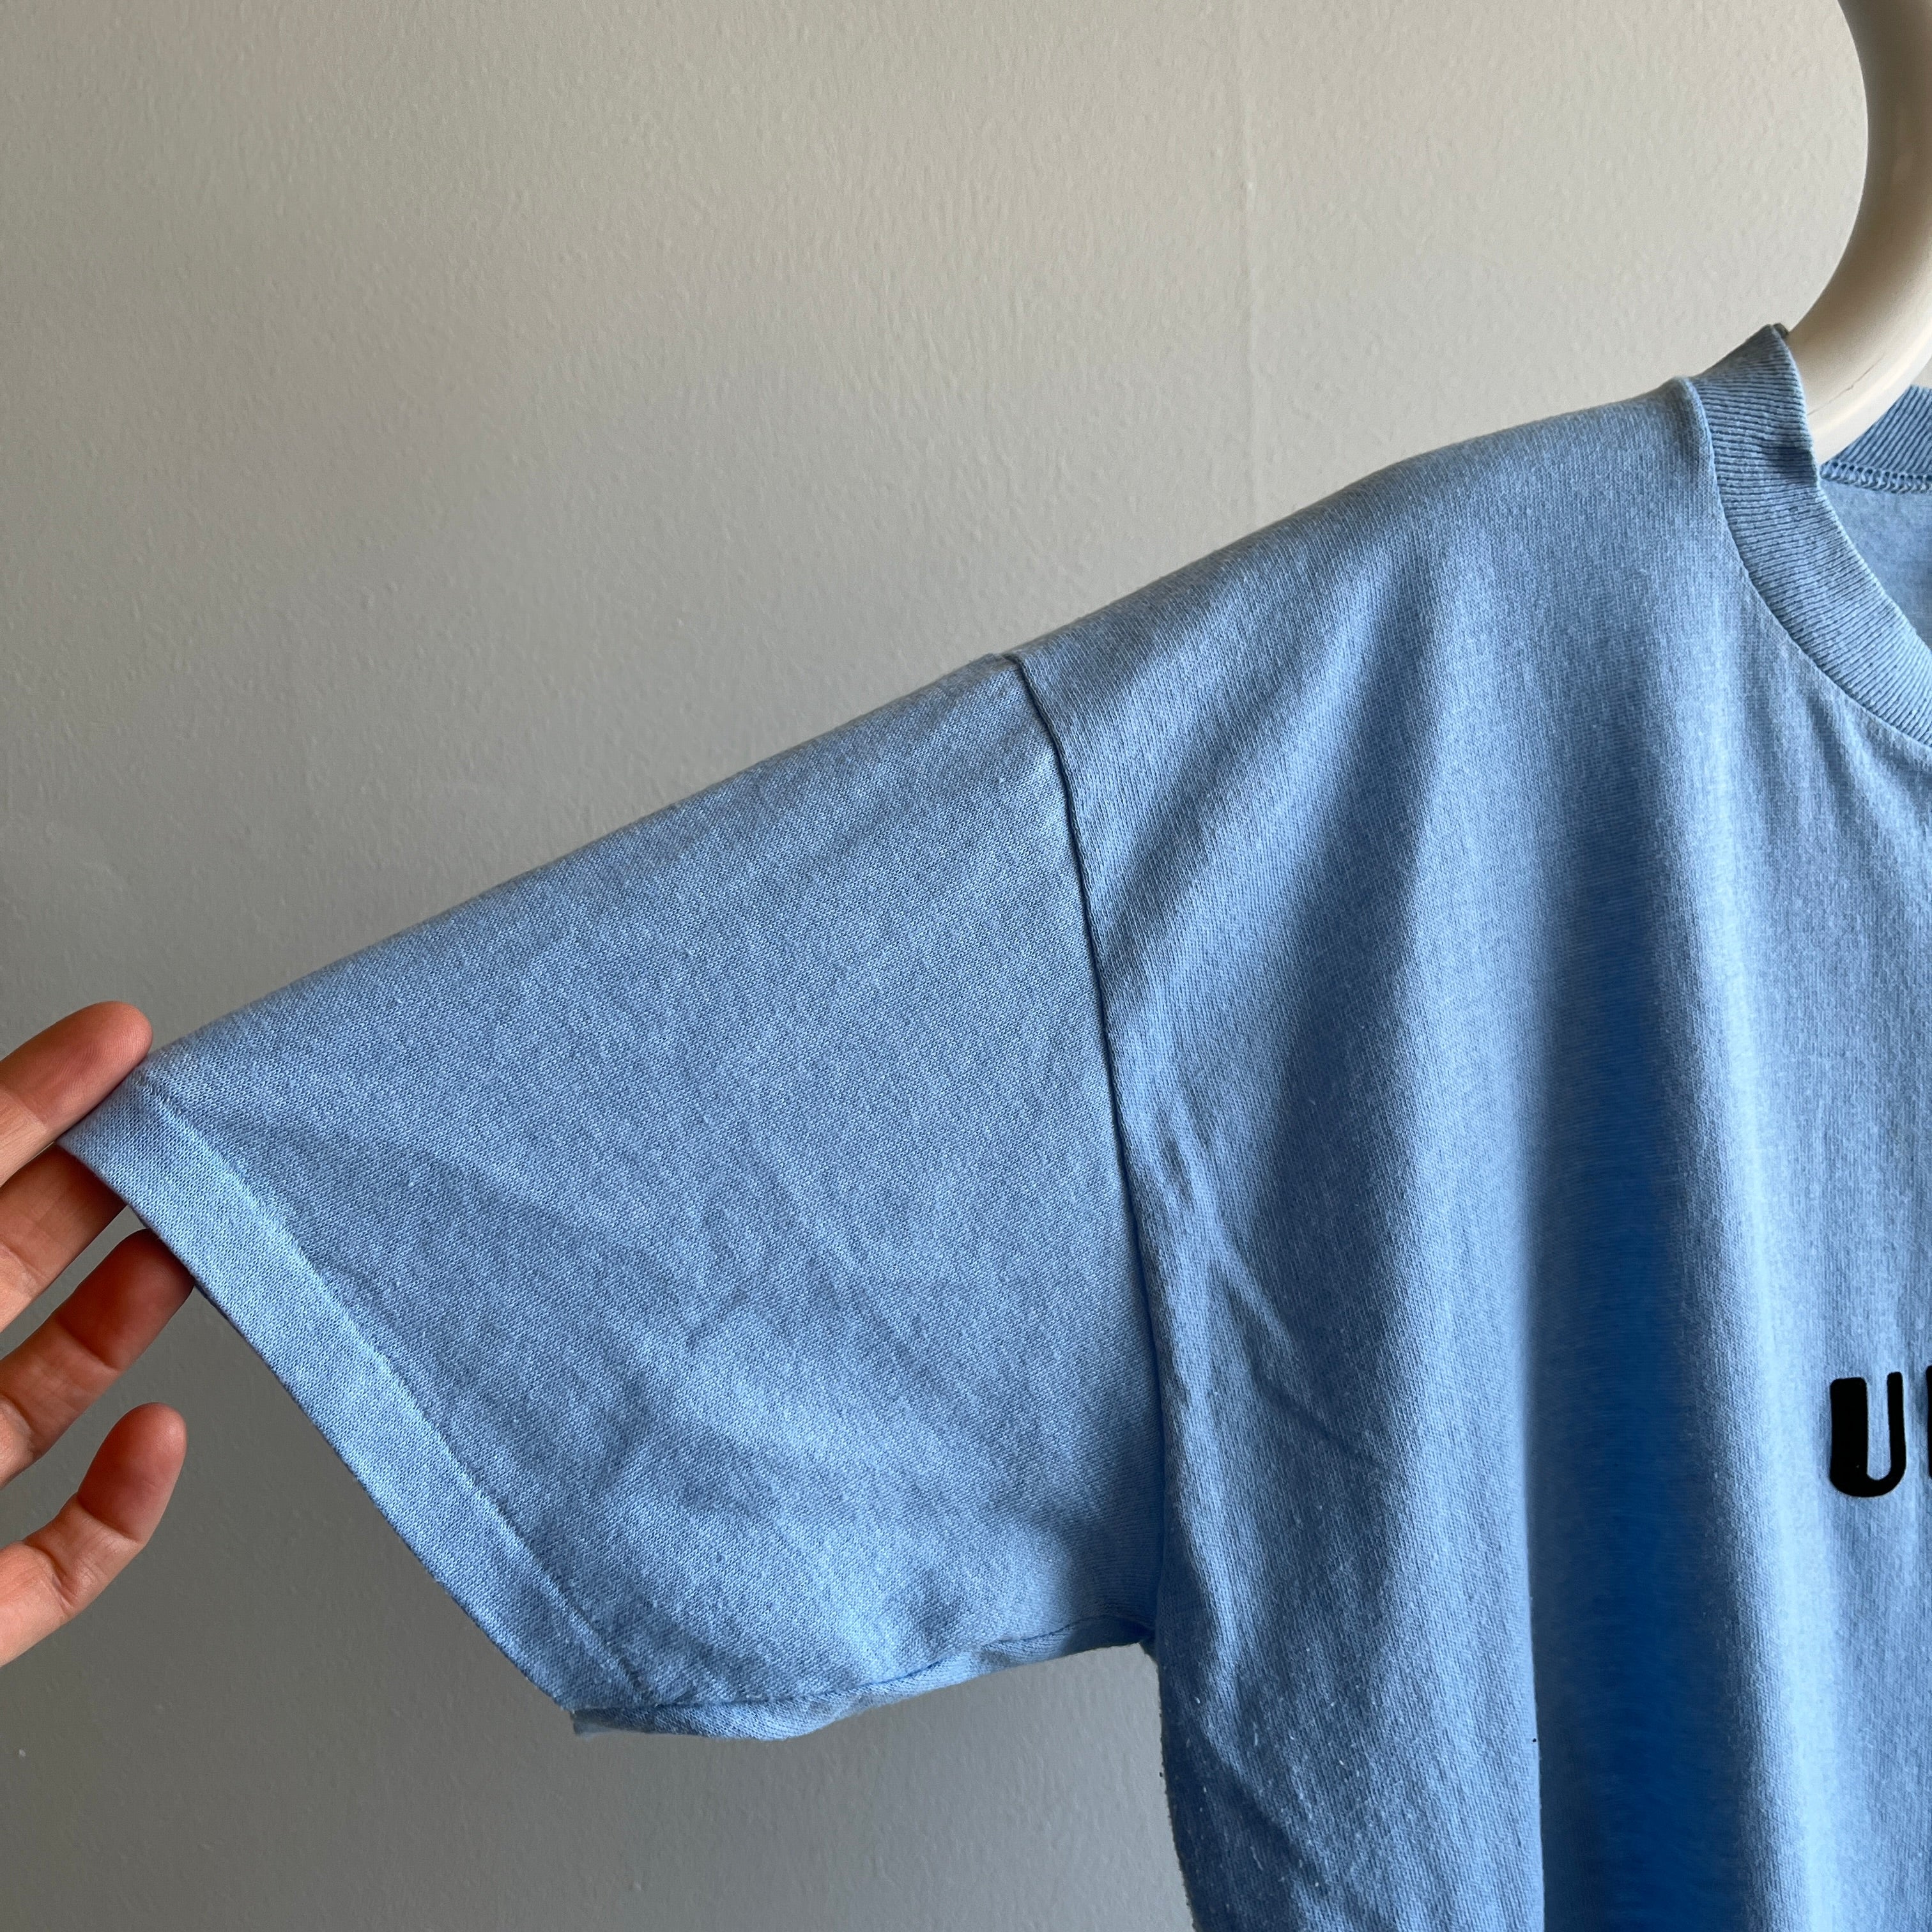 T-shirt en tricot Ulysses des années 1970 par Sportswear - Made in Clute, TX - WOW